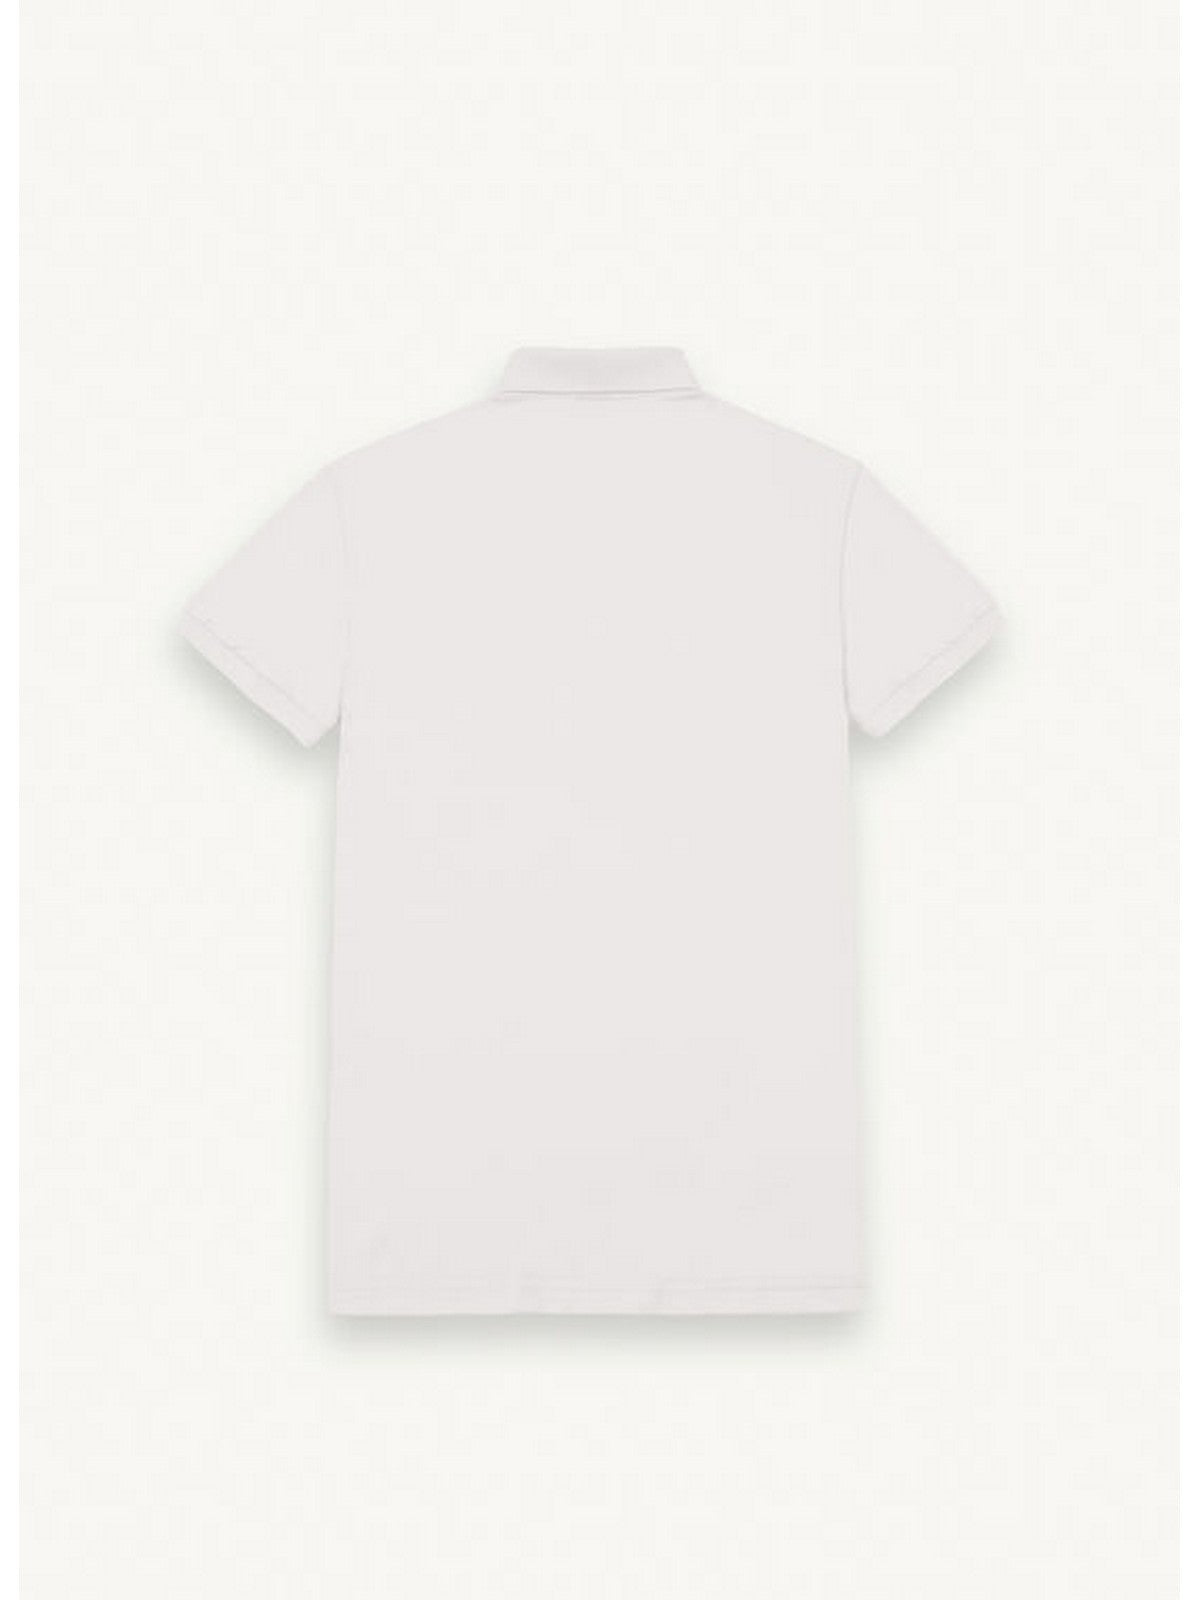 COLMAR T-Shirt et polo pour hommes 7646 4SH 01 Blanc